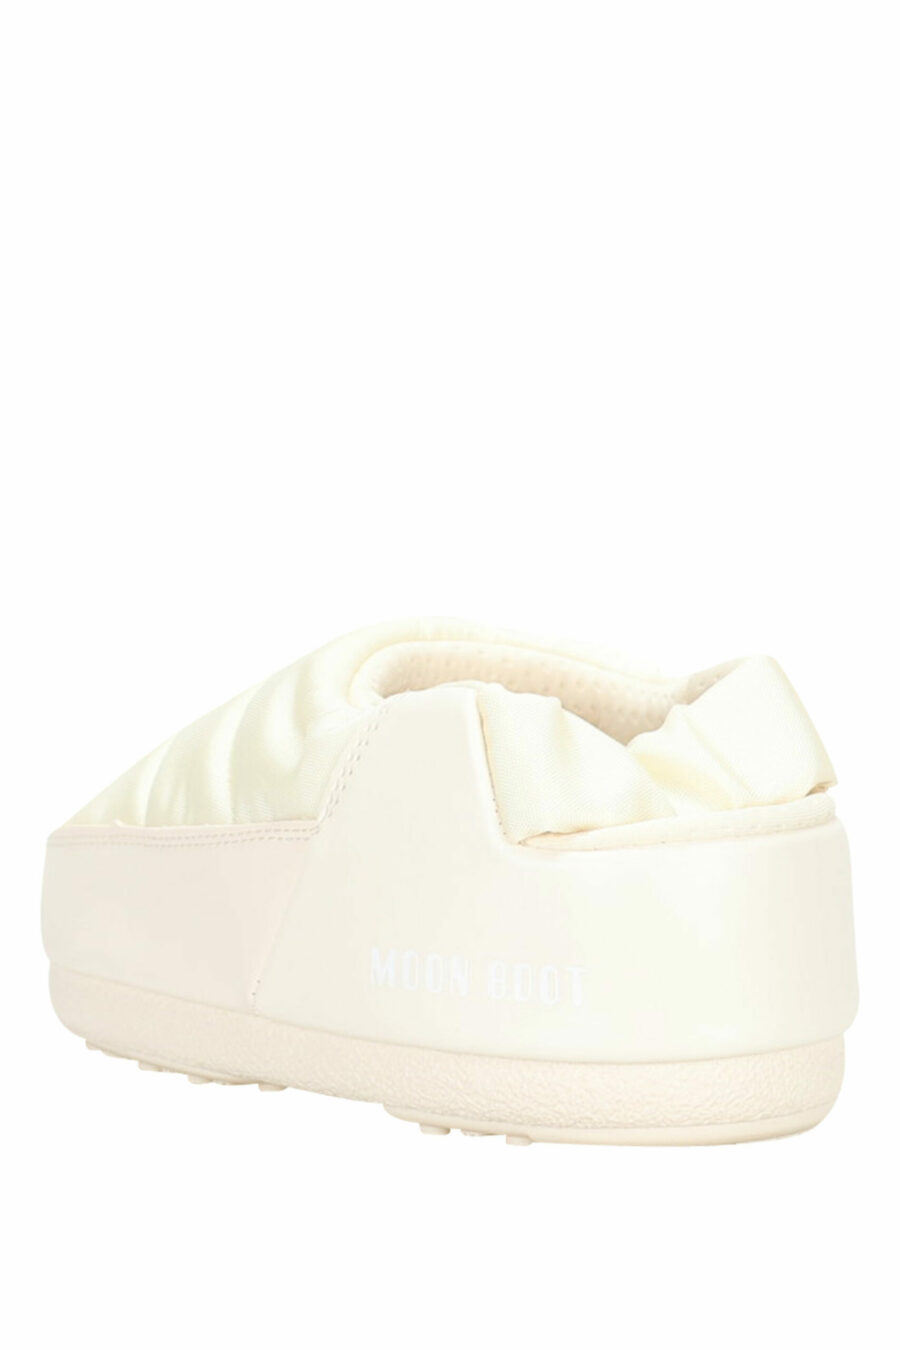 Weiße Sandalen mit weißem Mini-Logo - 8050032004080 4 skaliert